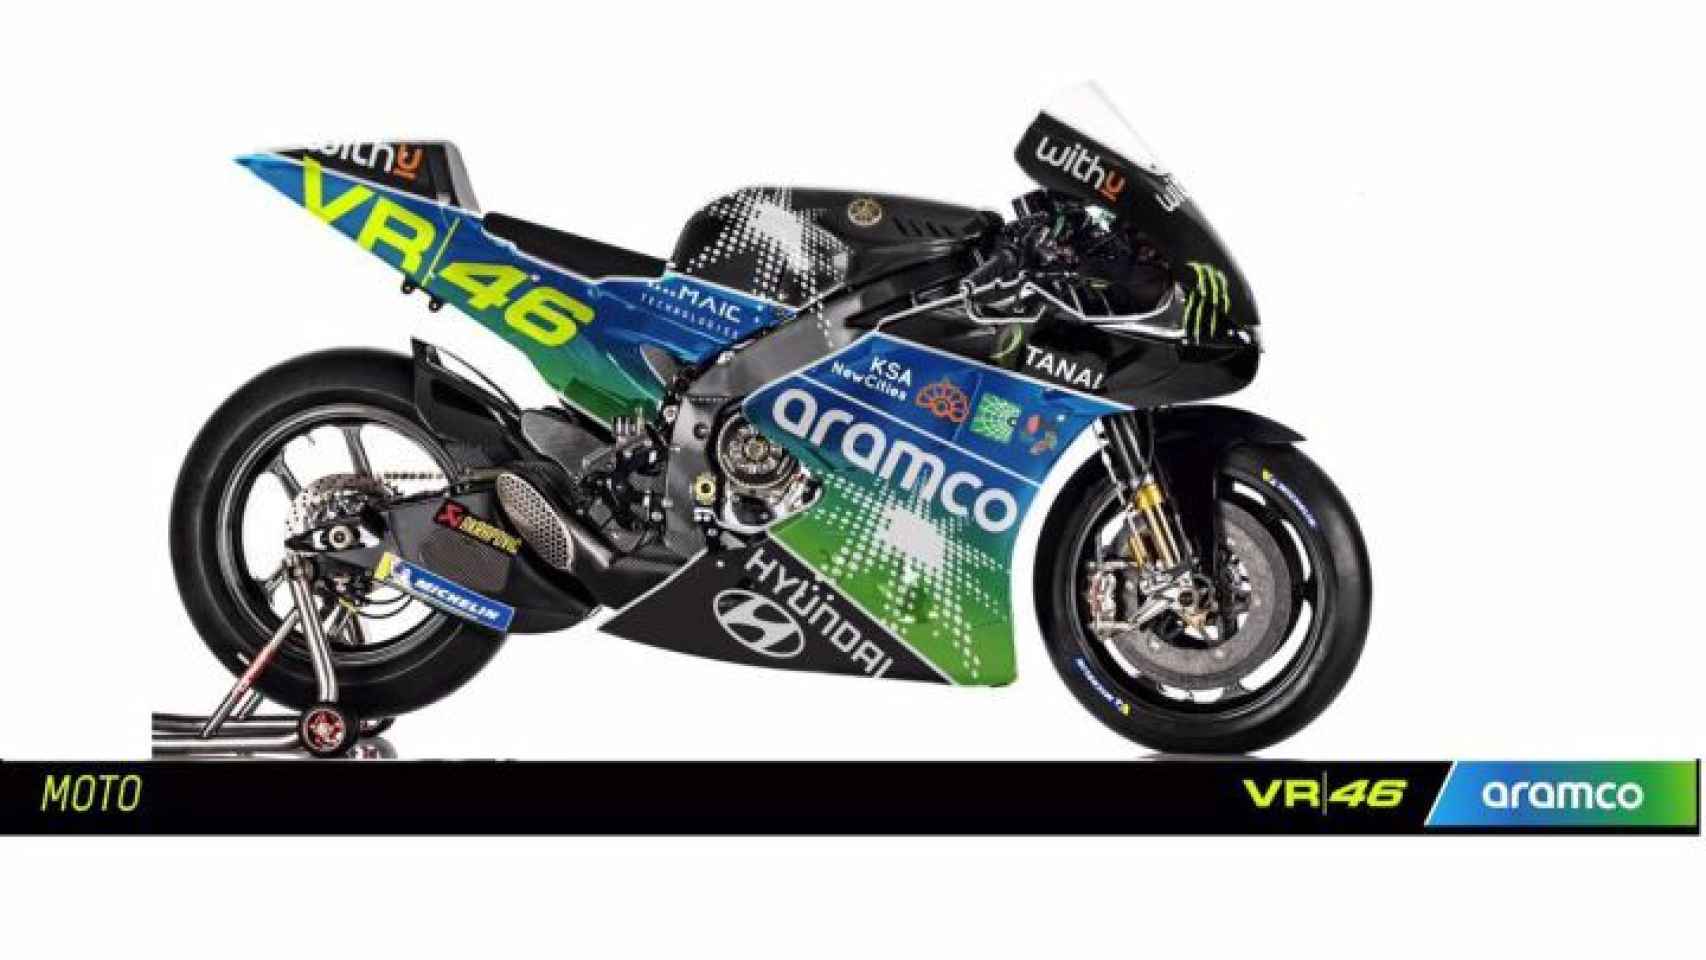 La decoración de la moto del nuevo equipo Aramco Racing Team VR46.